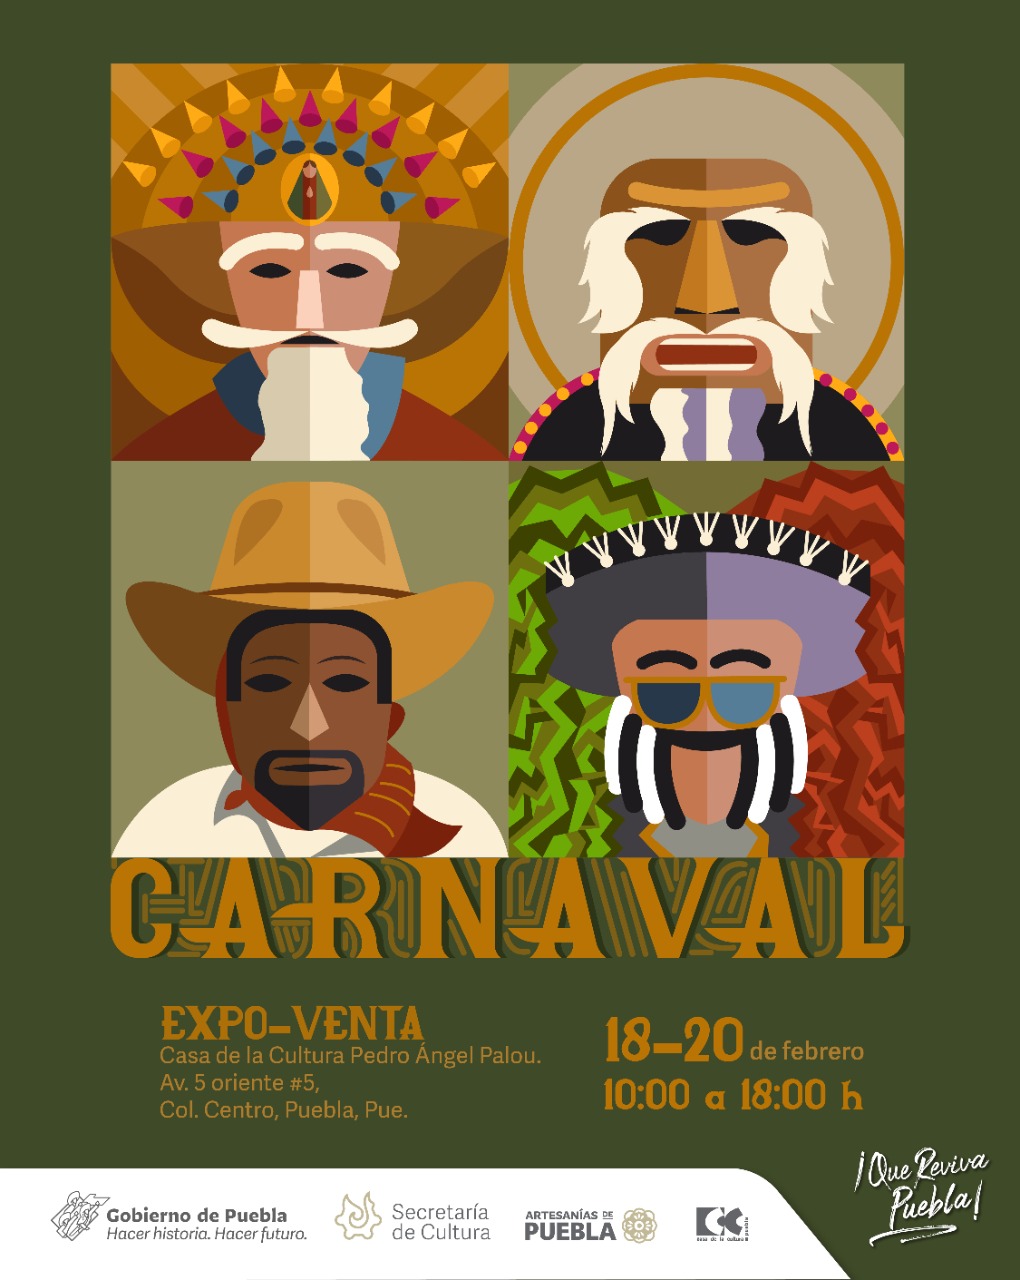 Realizará Cultura Expo-venta “Los artesanos en Carnaval”